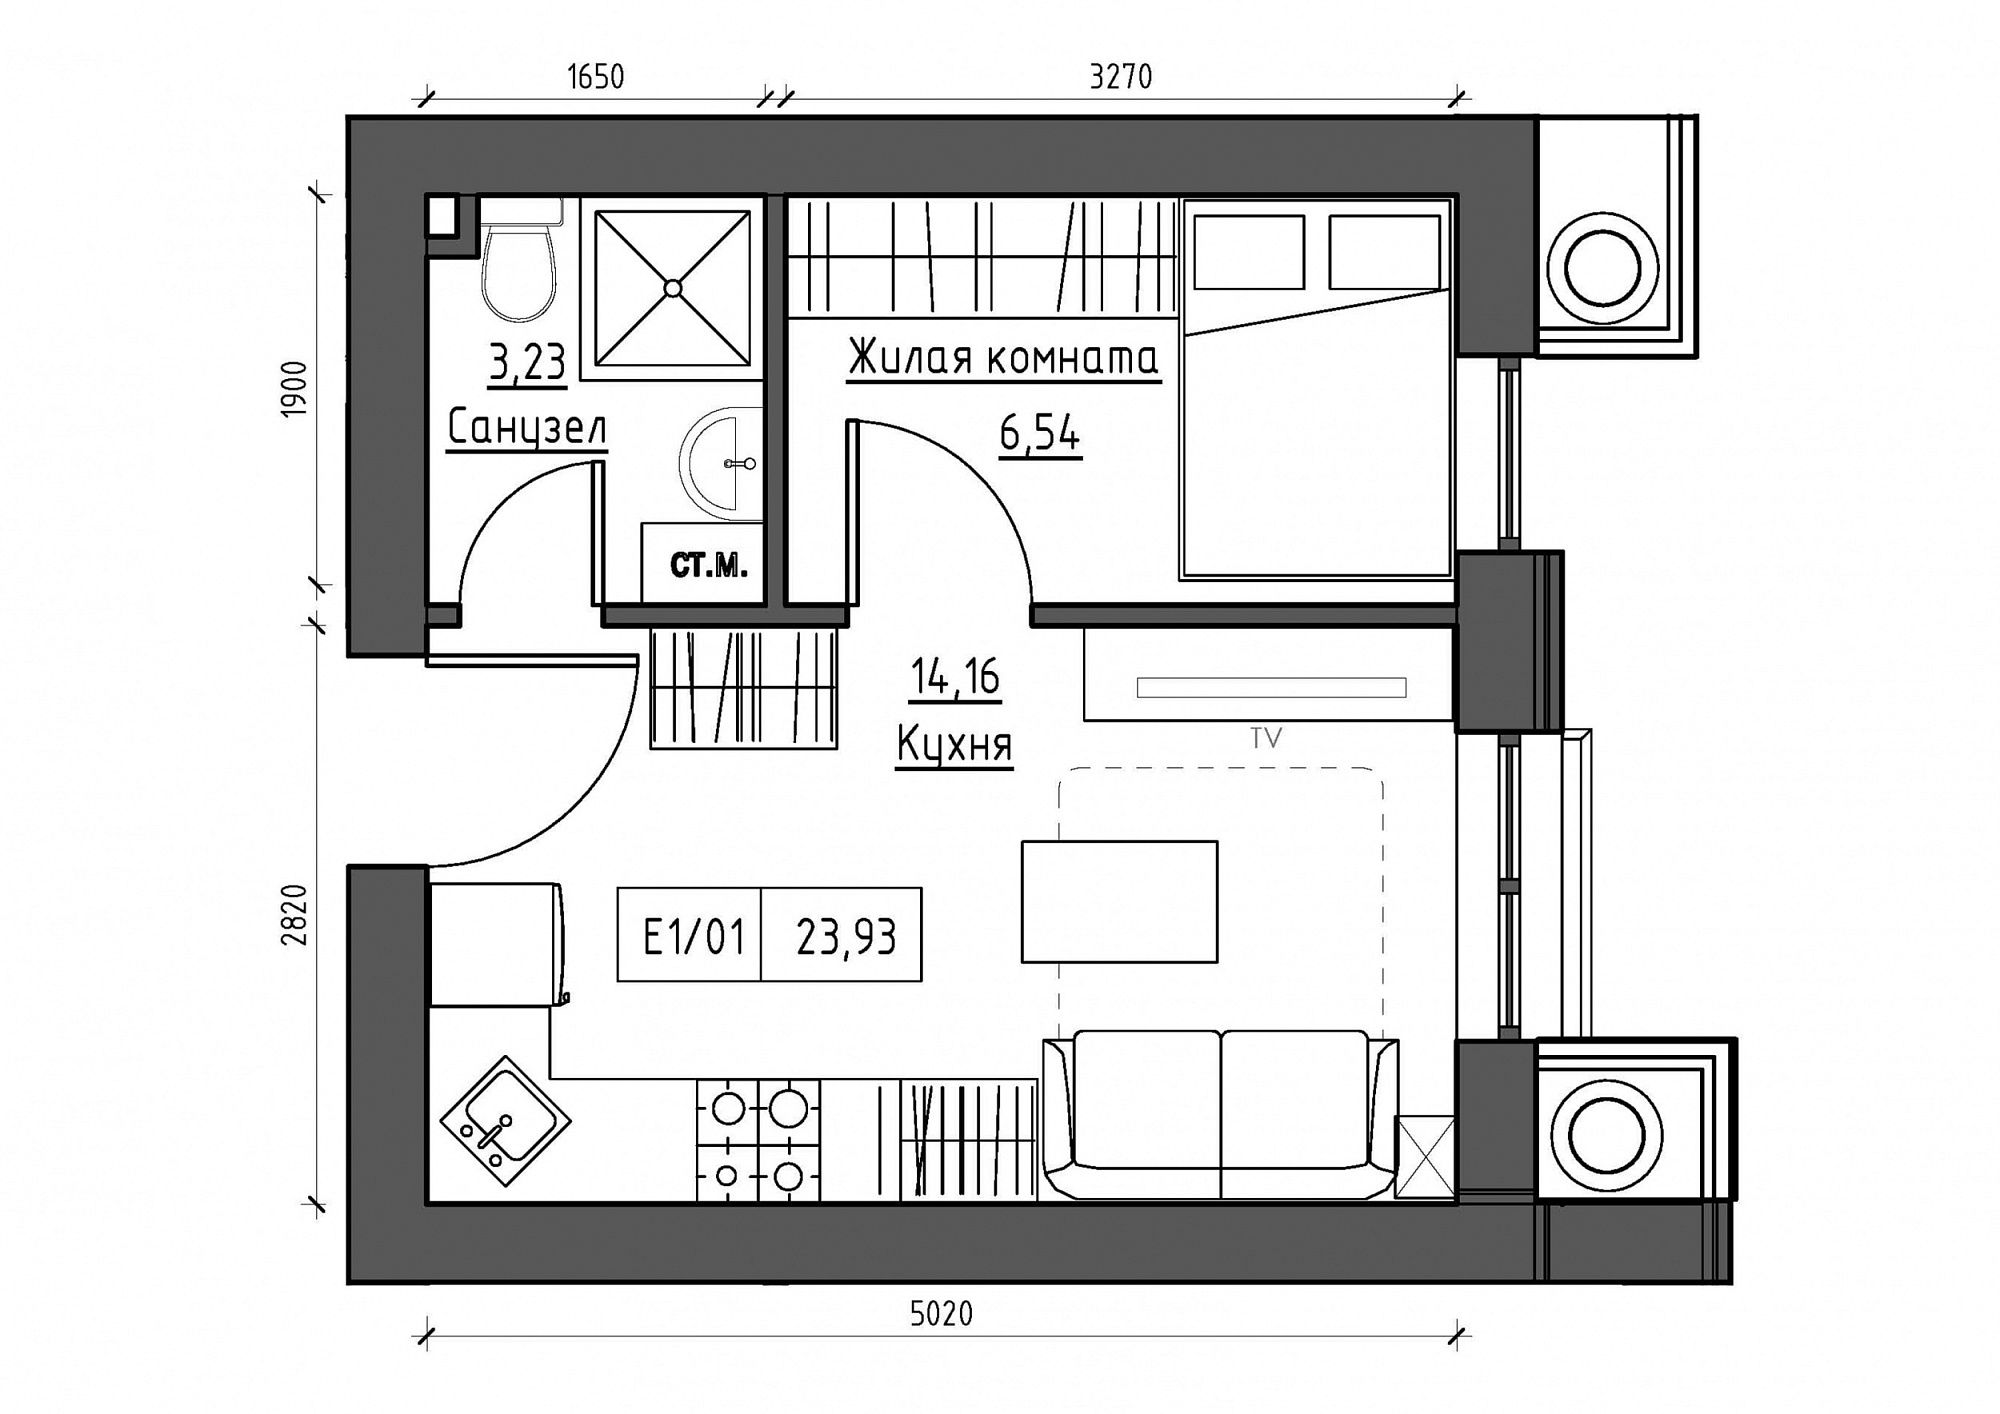 Планування 1-к квартира площею 23.93м2, KS-011-04/0004.